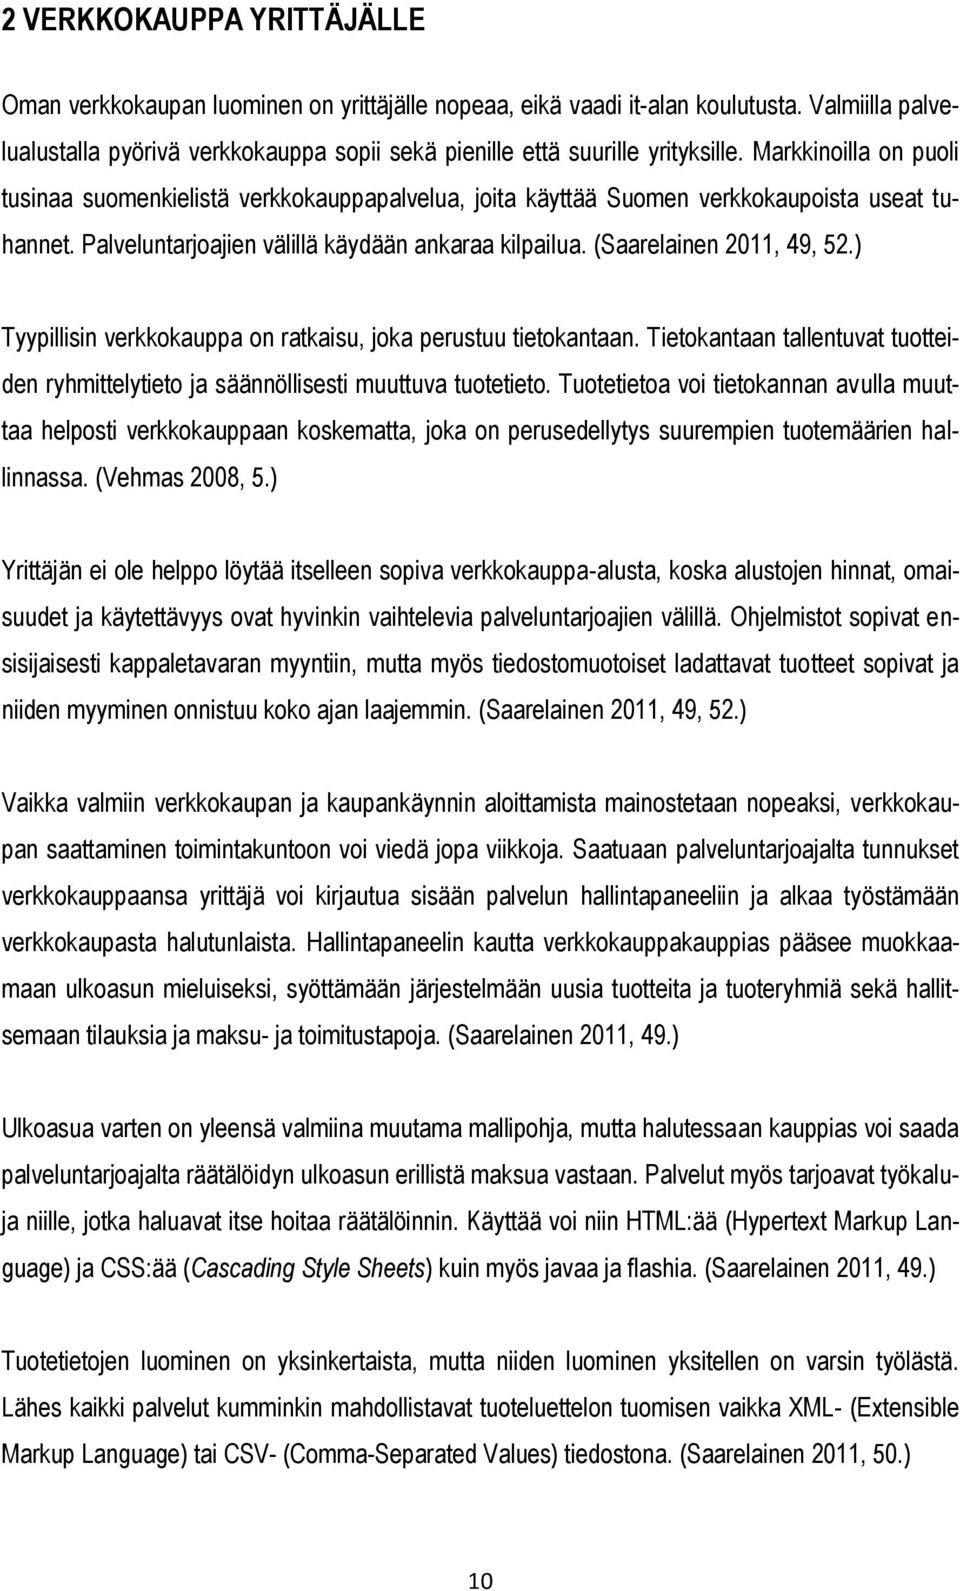 Markkinoilla on puoli tusinaa suomenkielistä verkkokauppapalvelua, joita käyttää Suomen verkkokaupoista useat tuhannet. Palveluntarjoajien välillä käydään ankaraa kilpailua. (Saarelainen 2011, 49, 52.